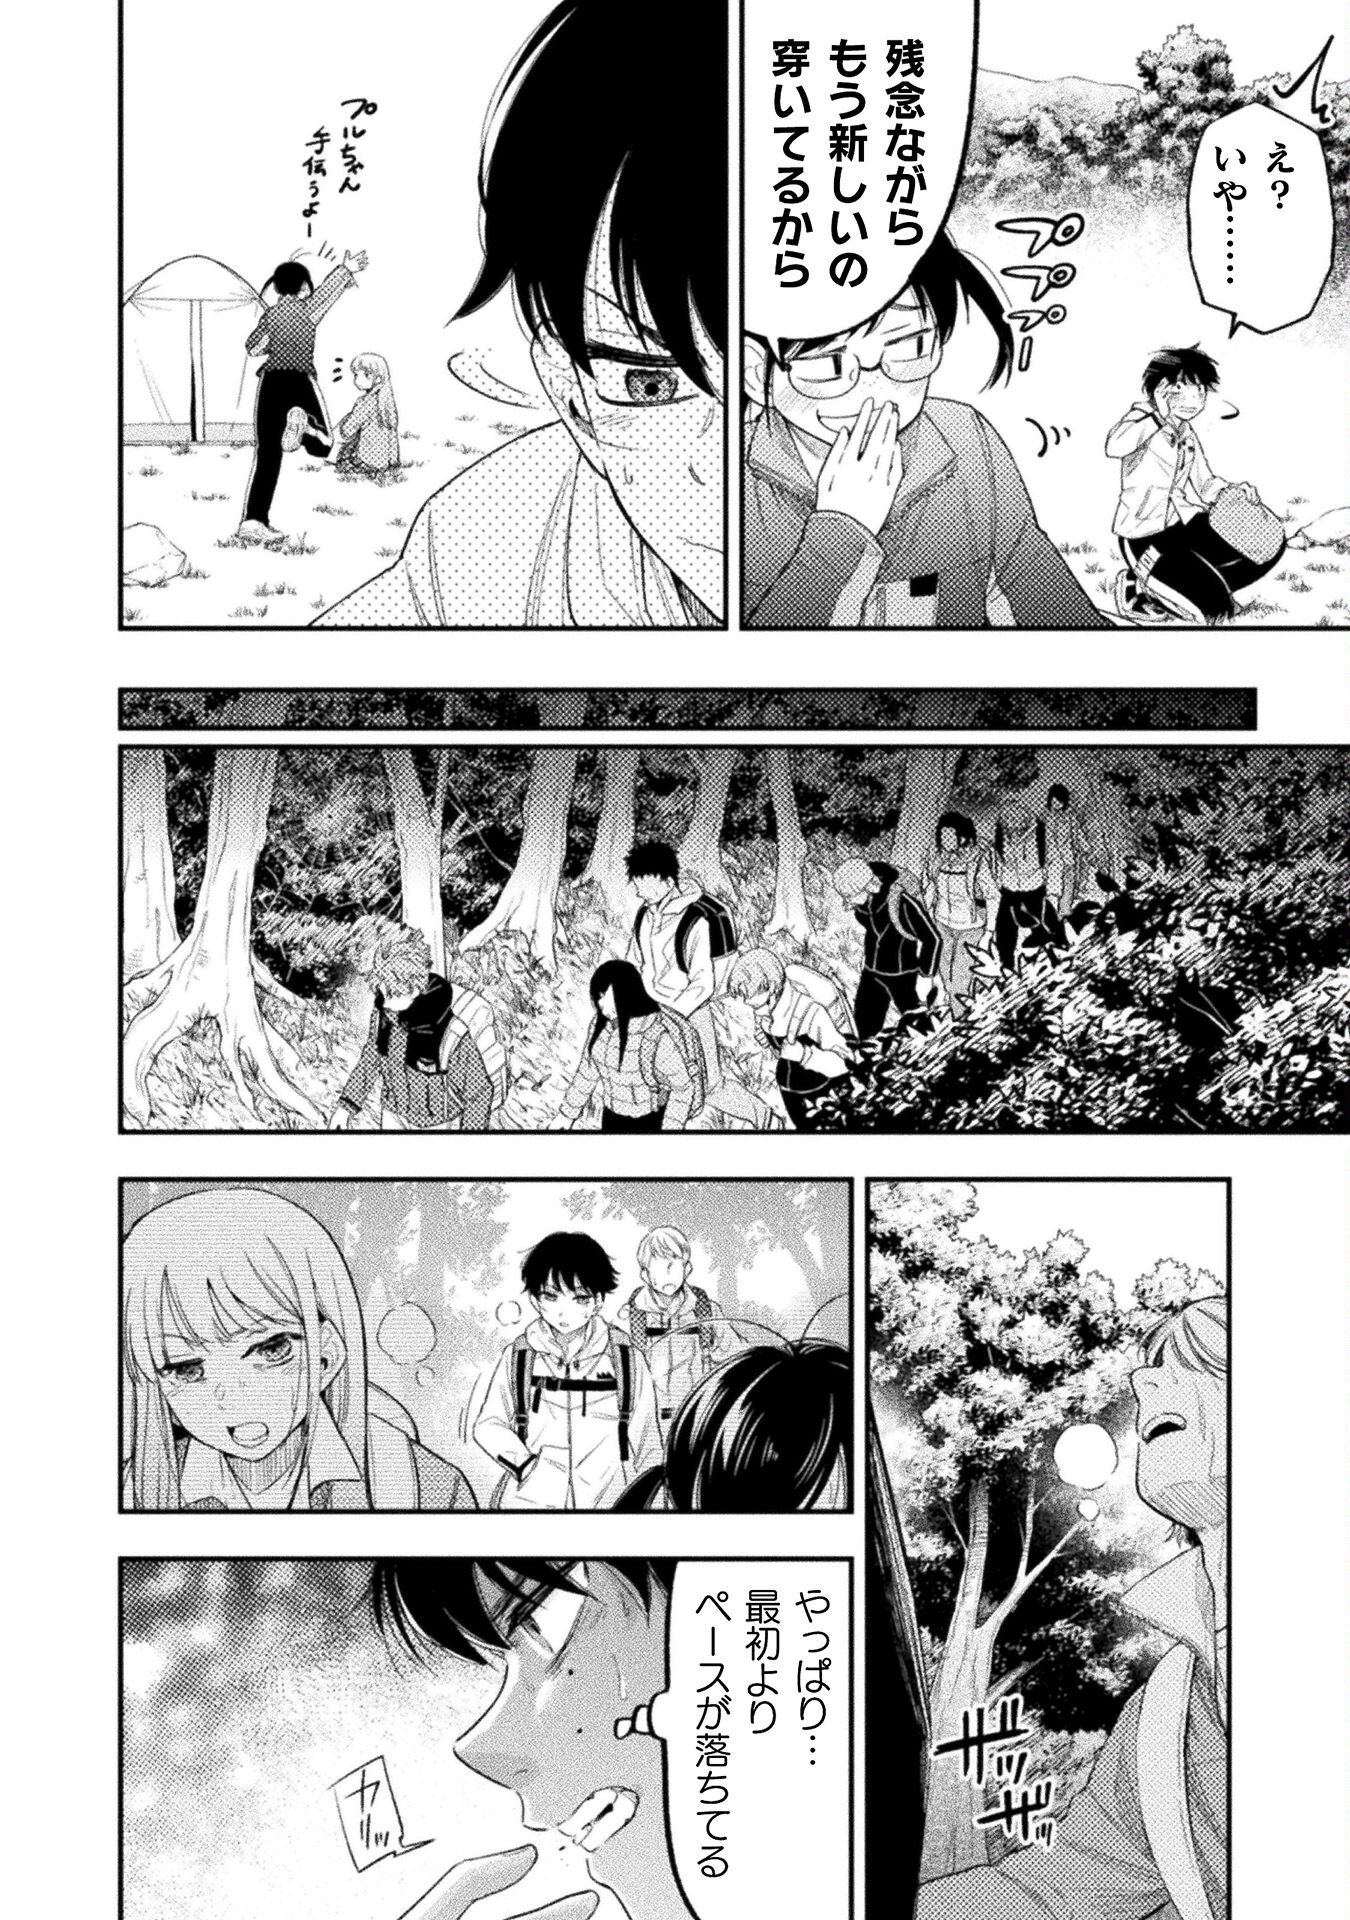 Umibe no Byouin de Kanojo to Hanashita Ikutsu ka no Koto - Chapter 14 - Page 2